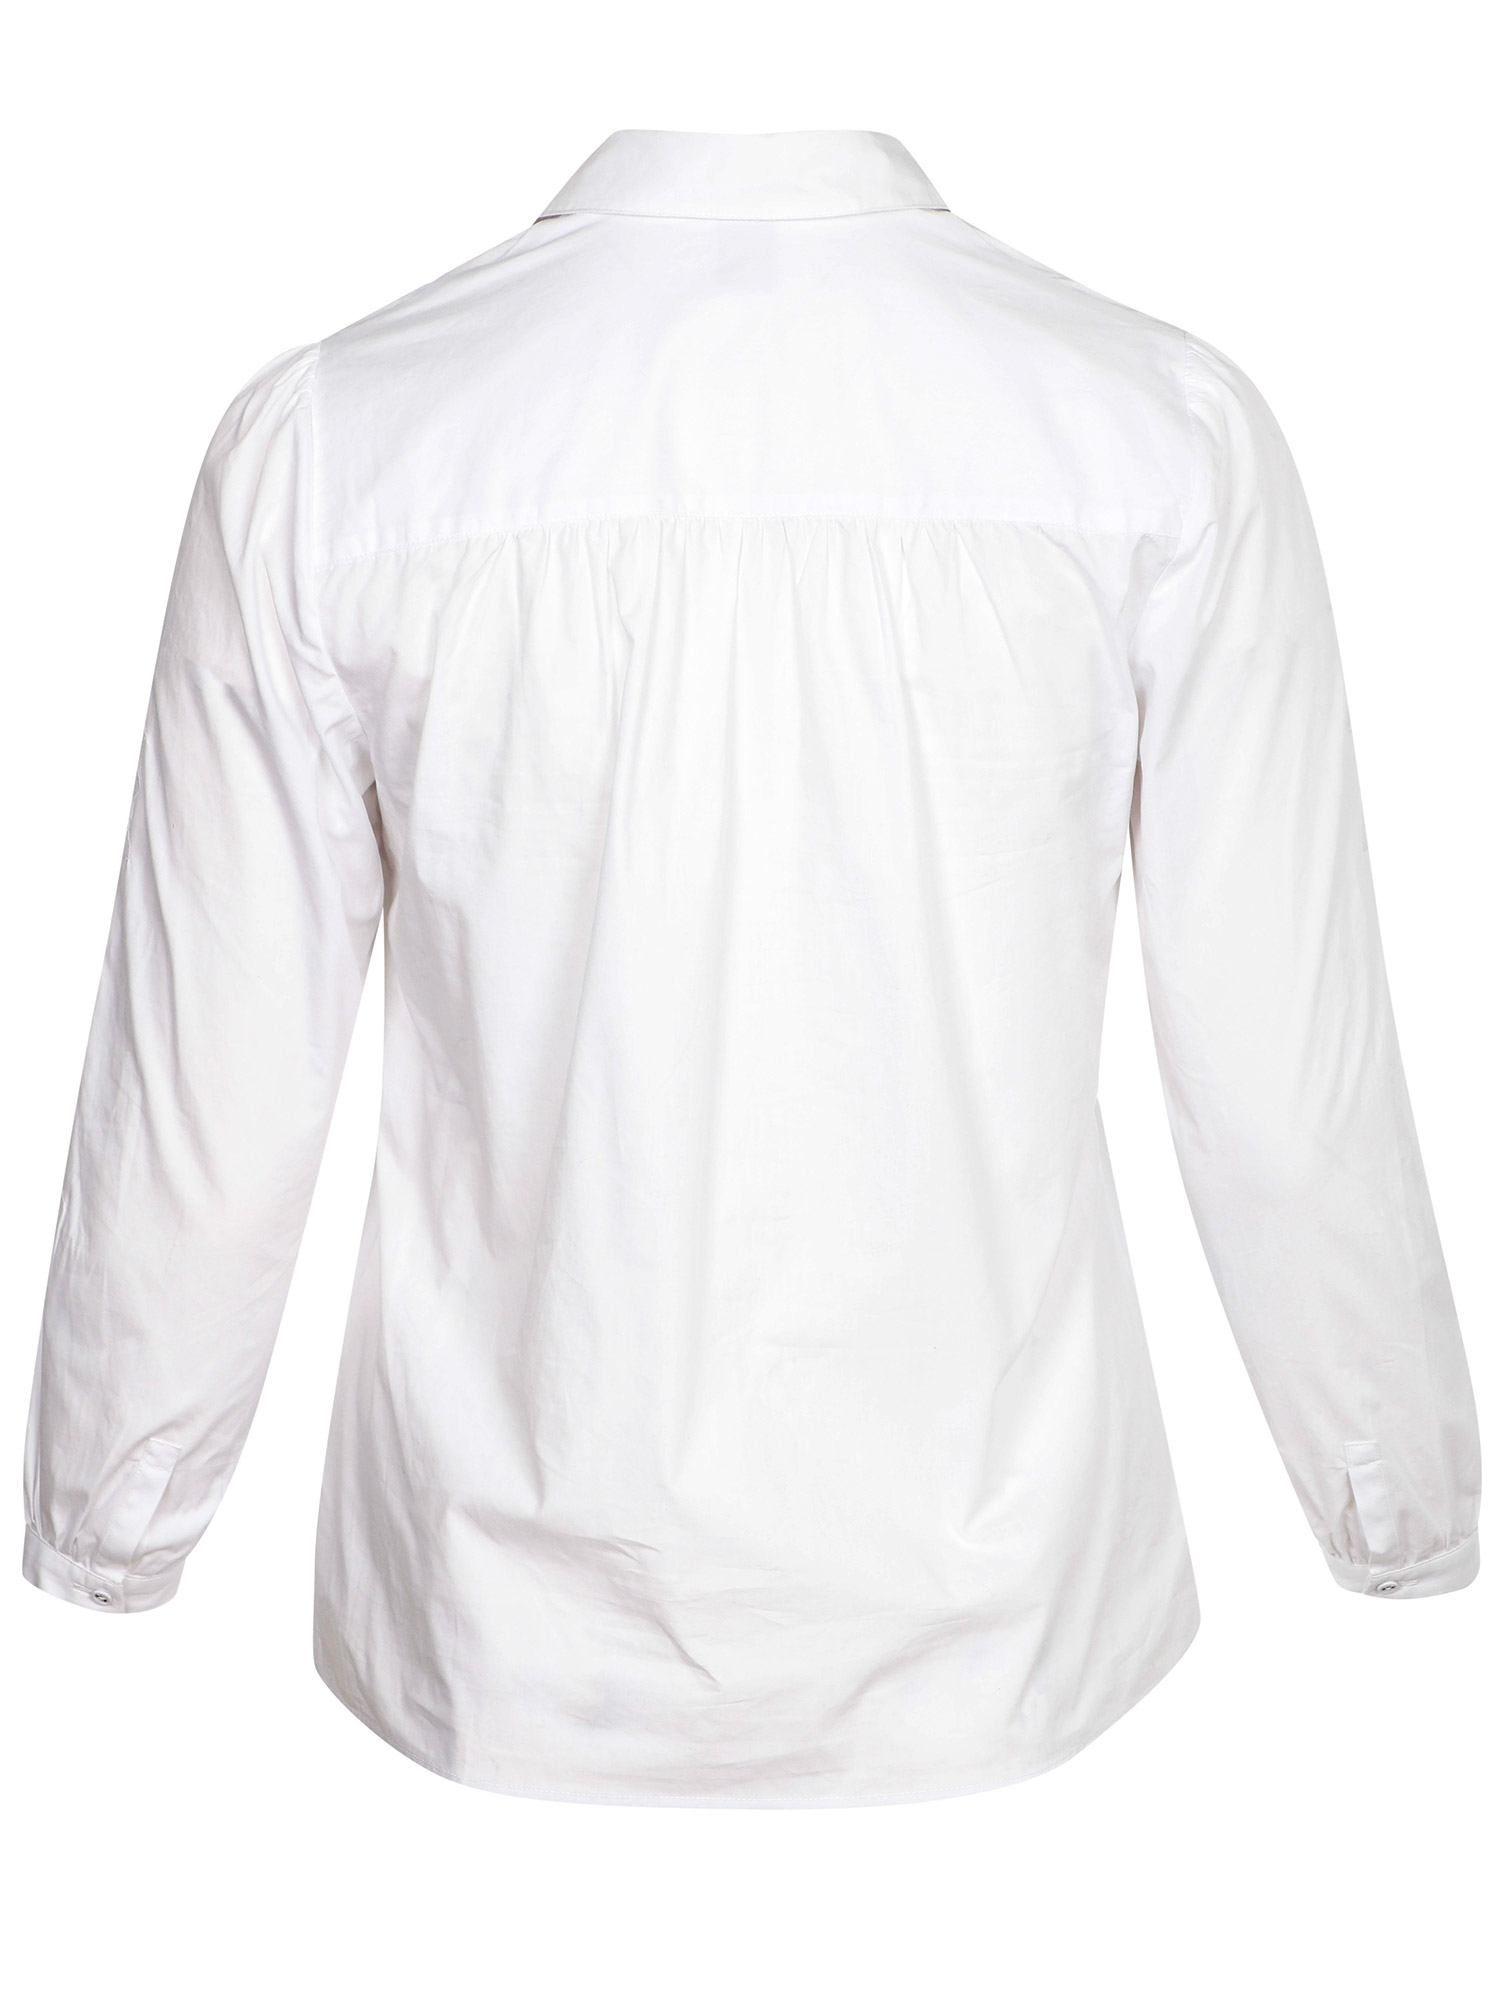 Hvid bomulds skjorte med flotte broderier på ærmerne fra Adia